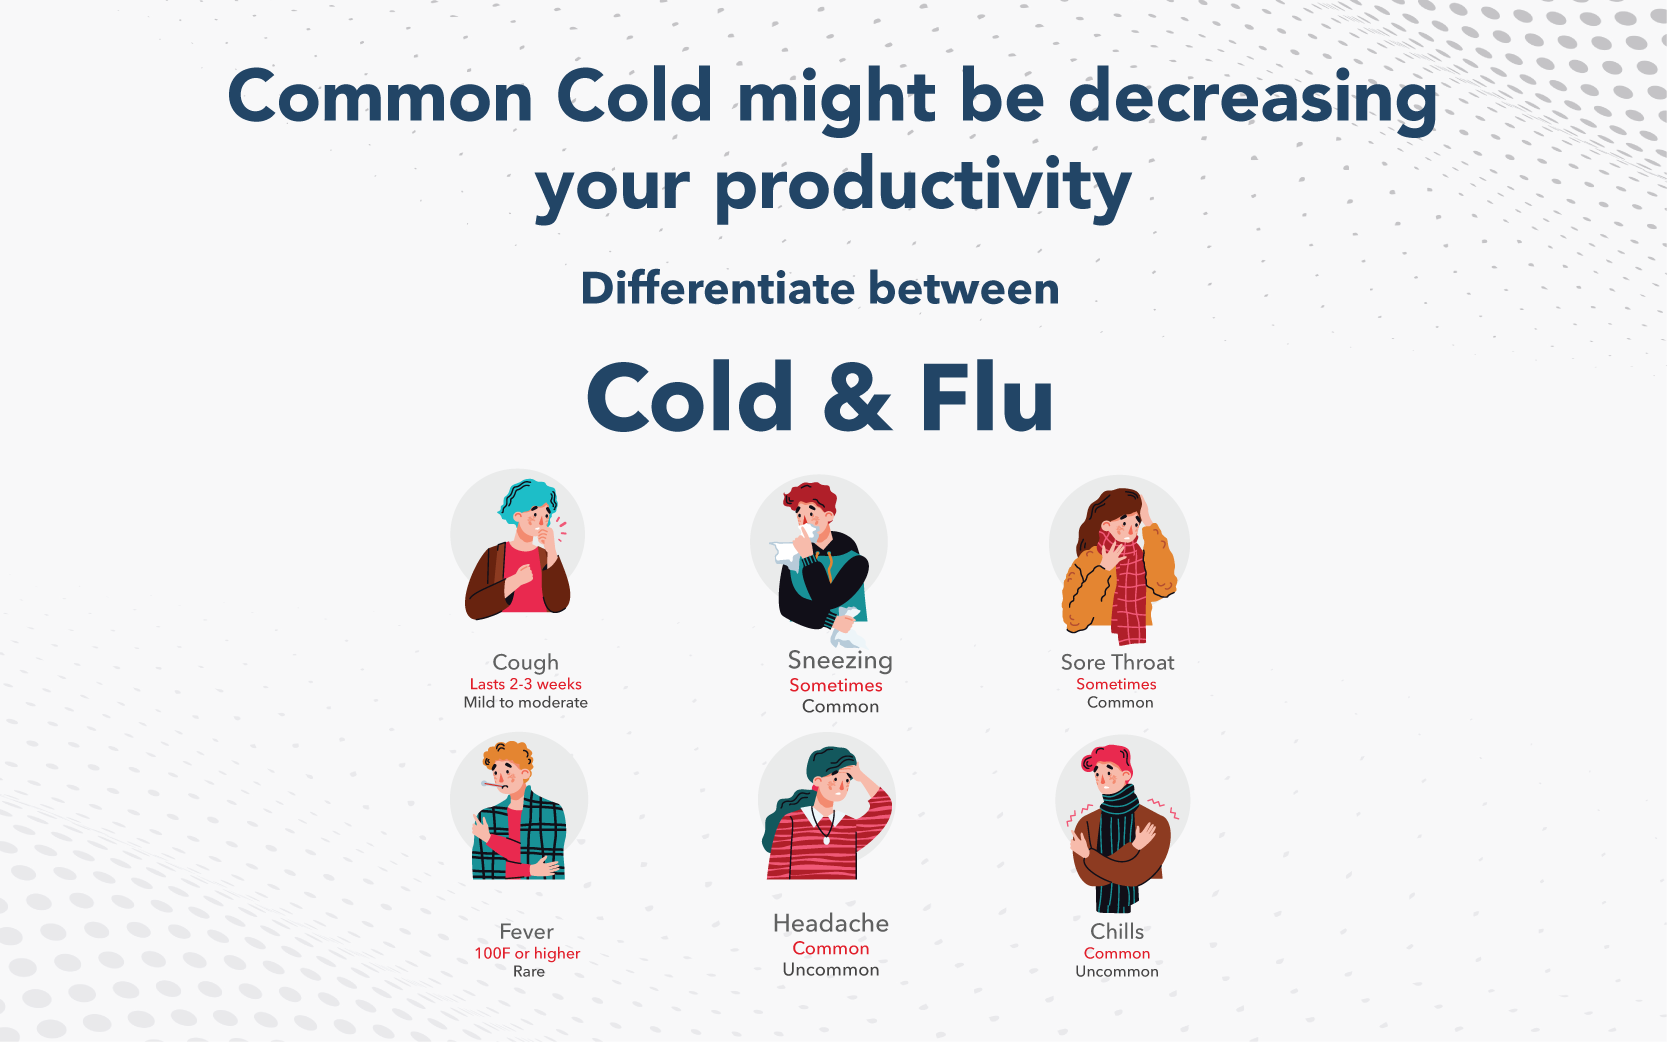 Differentiate Between cold & flu